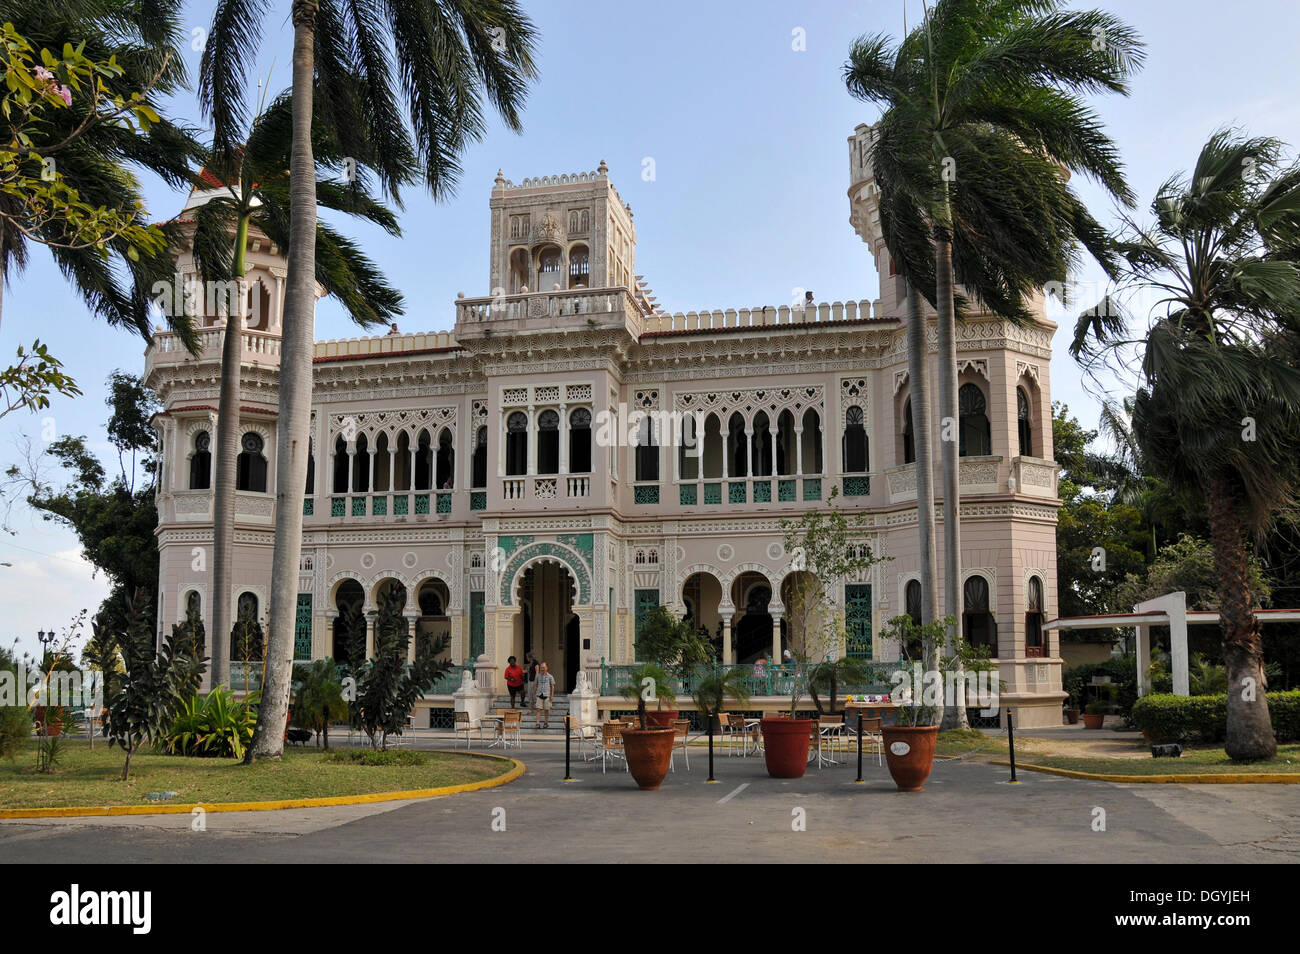 Palacio del Valle, Punta Gorda, Cienfuegos, Cuba, Caraïbes, Amérique centrale Banque D'Images